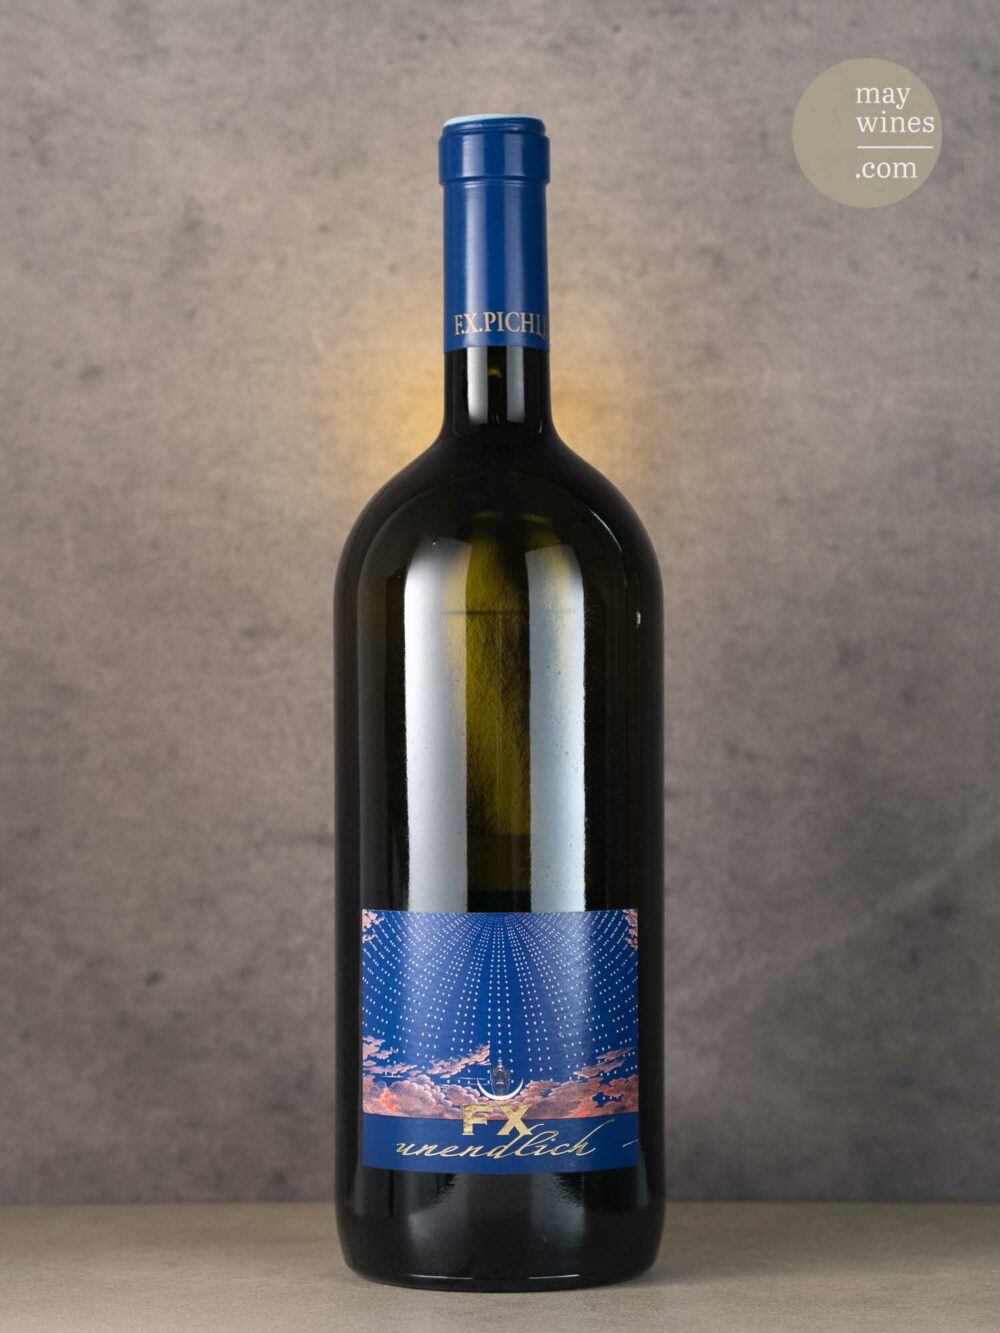 May Wines – Weißwein – 2009 Unendlich Riesling Smaragd - Weingut FX Pichler